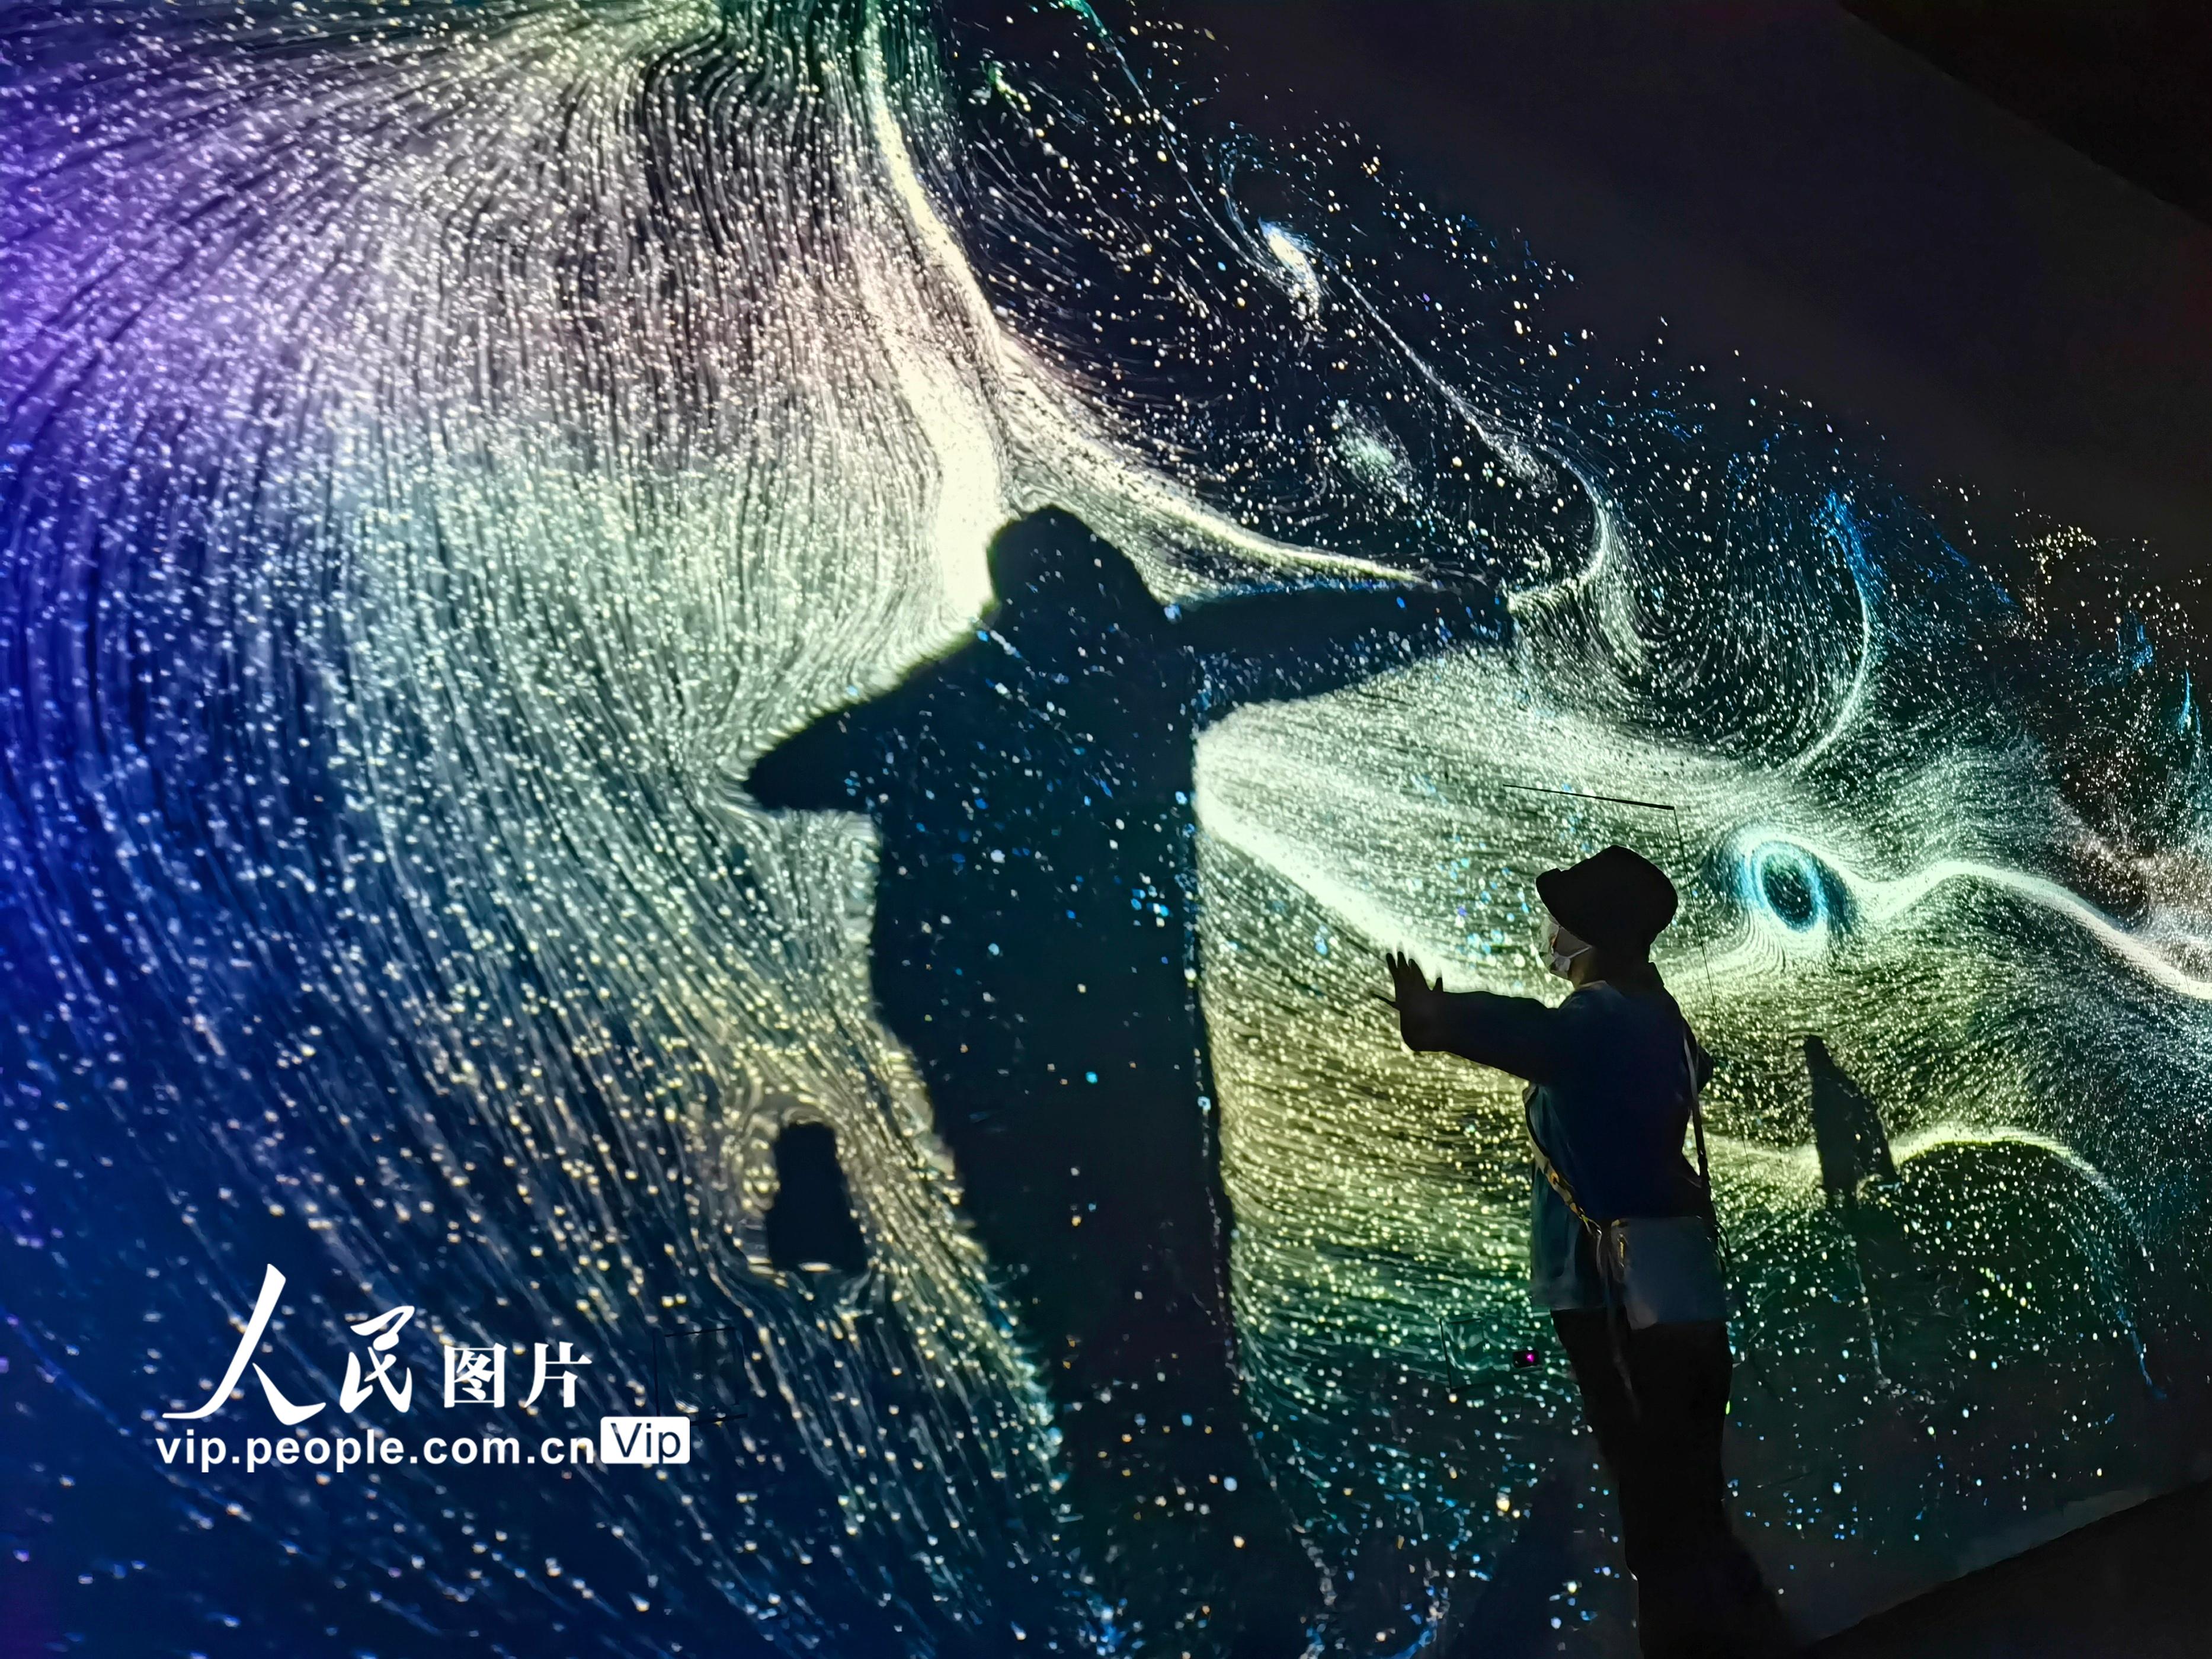 在上海天文馆探索浩瀚宇宙无穷魅力